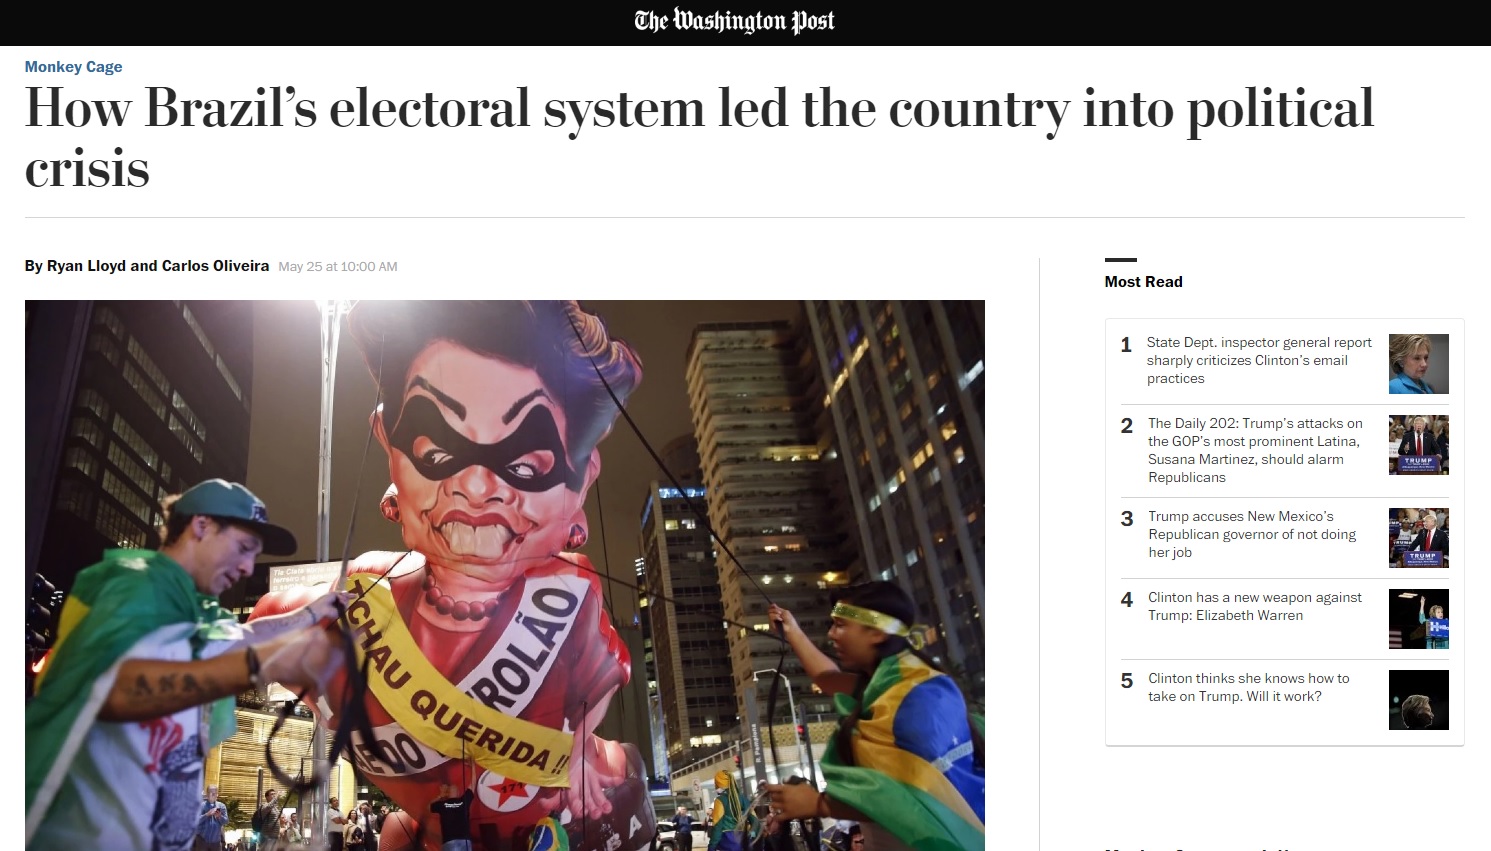 Sistema político é origem da crise vivida no Brasil, diz 'Washington Post'